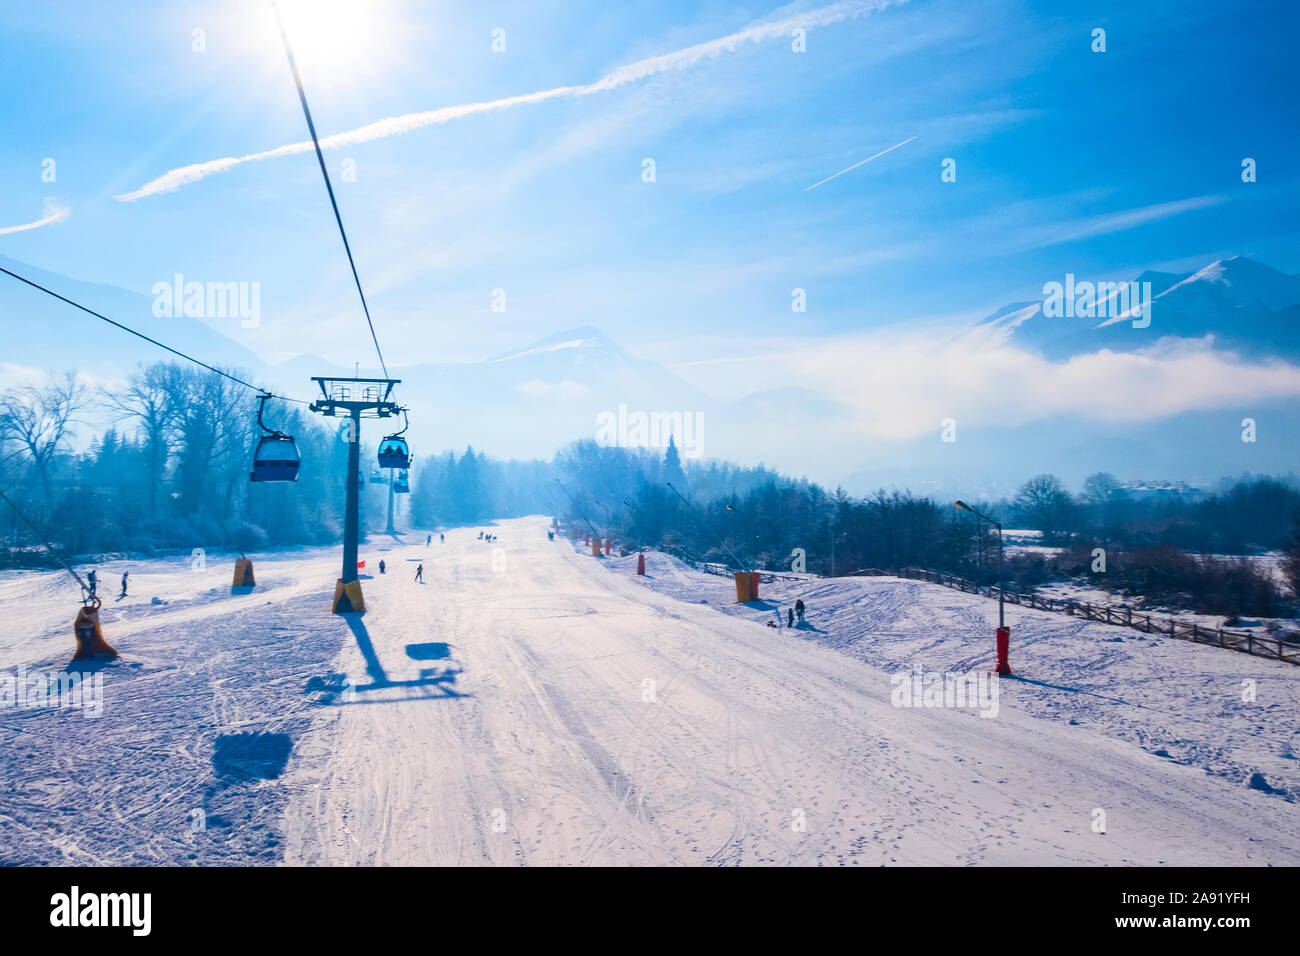 Bansko, Bulgarien Antenne winter Resort view mit Skipiste, Seilbahn Gondel Hütten und Berggipfel Stockfoto